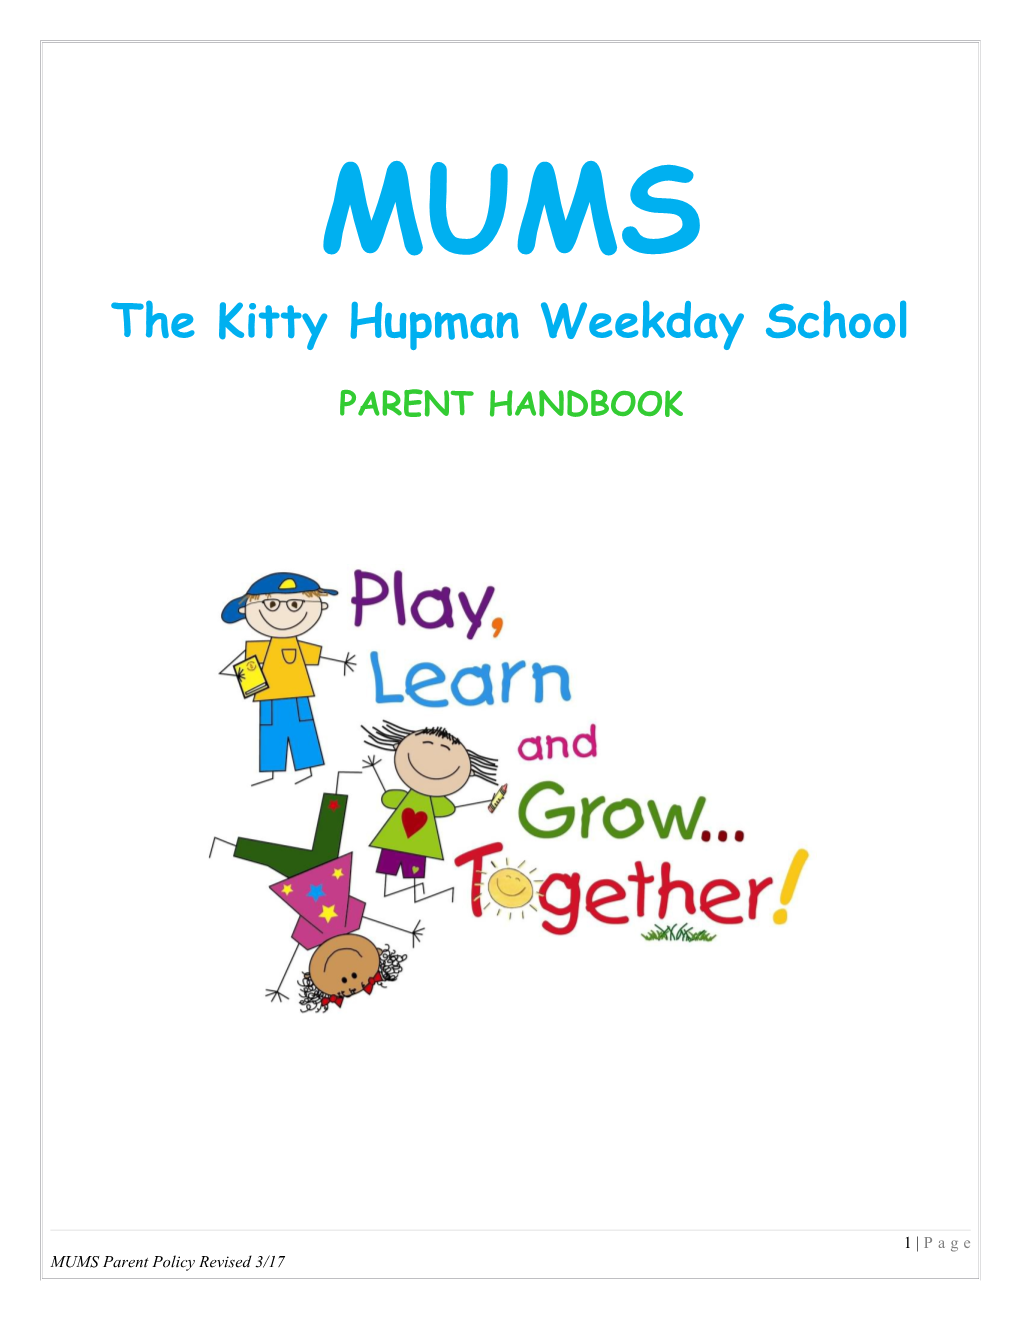 The Kitty Hupmanweekday School